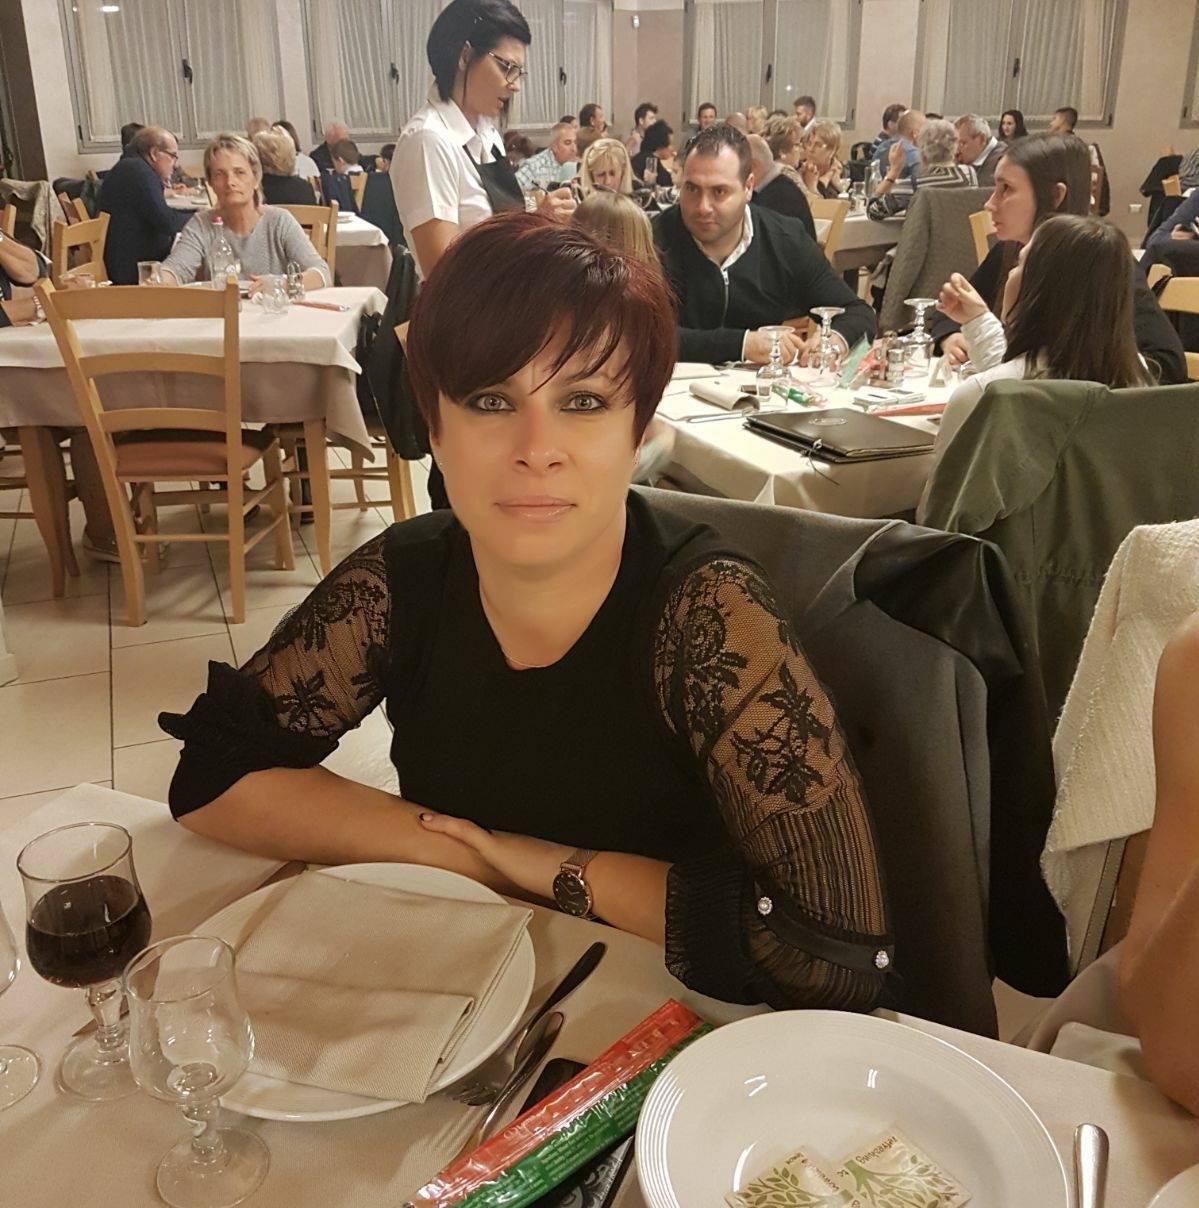 В Хорватии итальянец до смерти забил украинку, с которой встречался: подробности трагедии